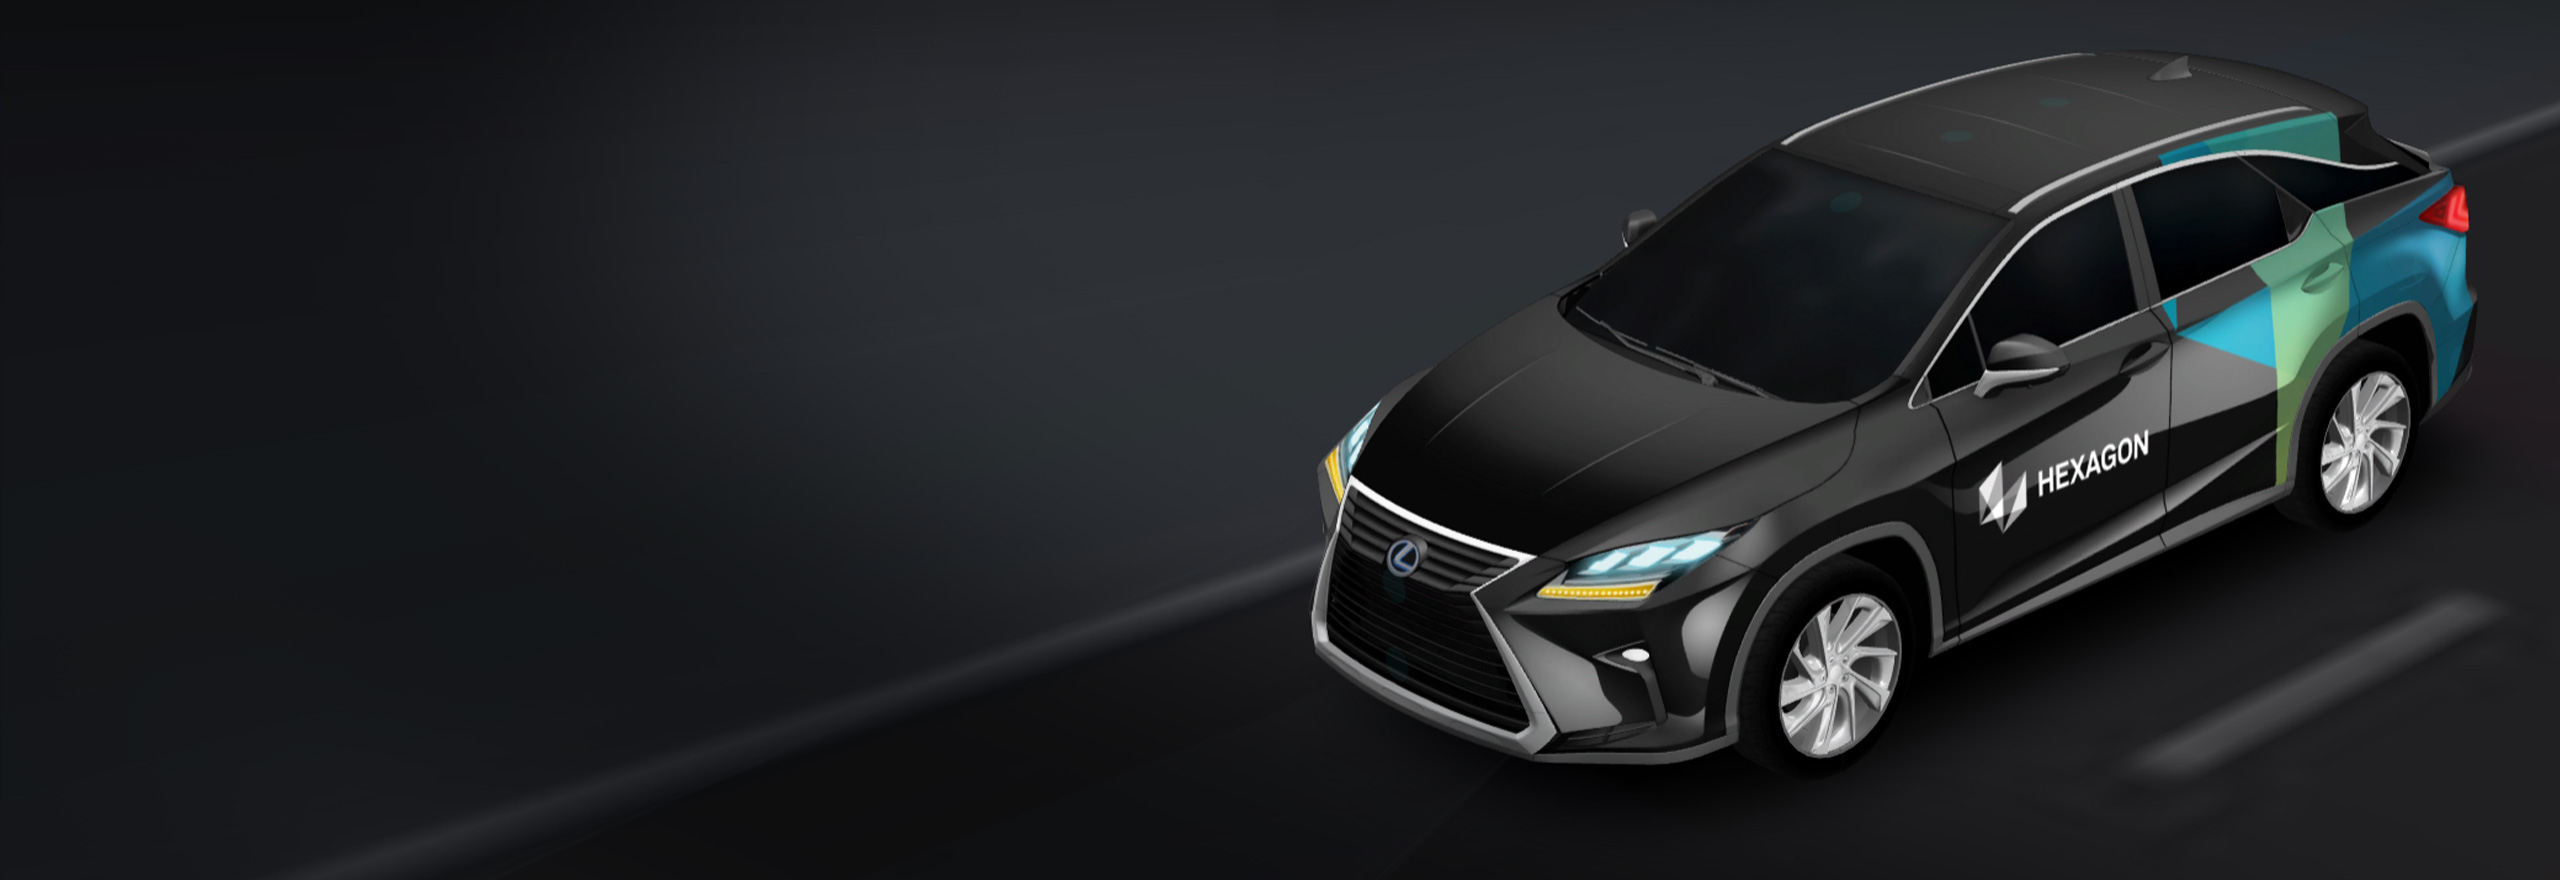 Un rendering 3D di un'auto autonoma con le tecnologie di posizionamento e percezione necessarie per abilitare l'autonomia e gli ADAS.